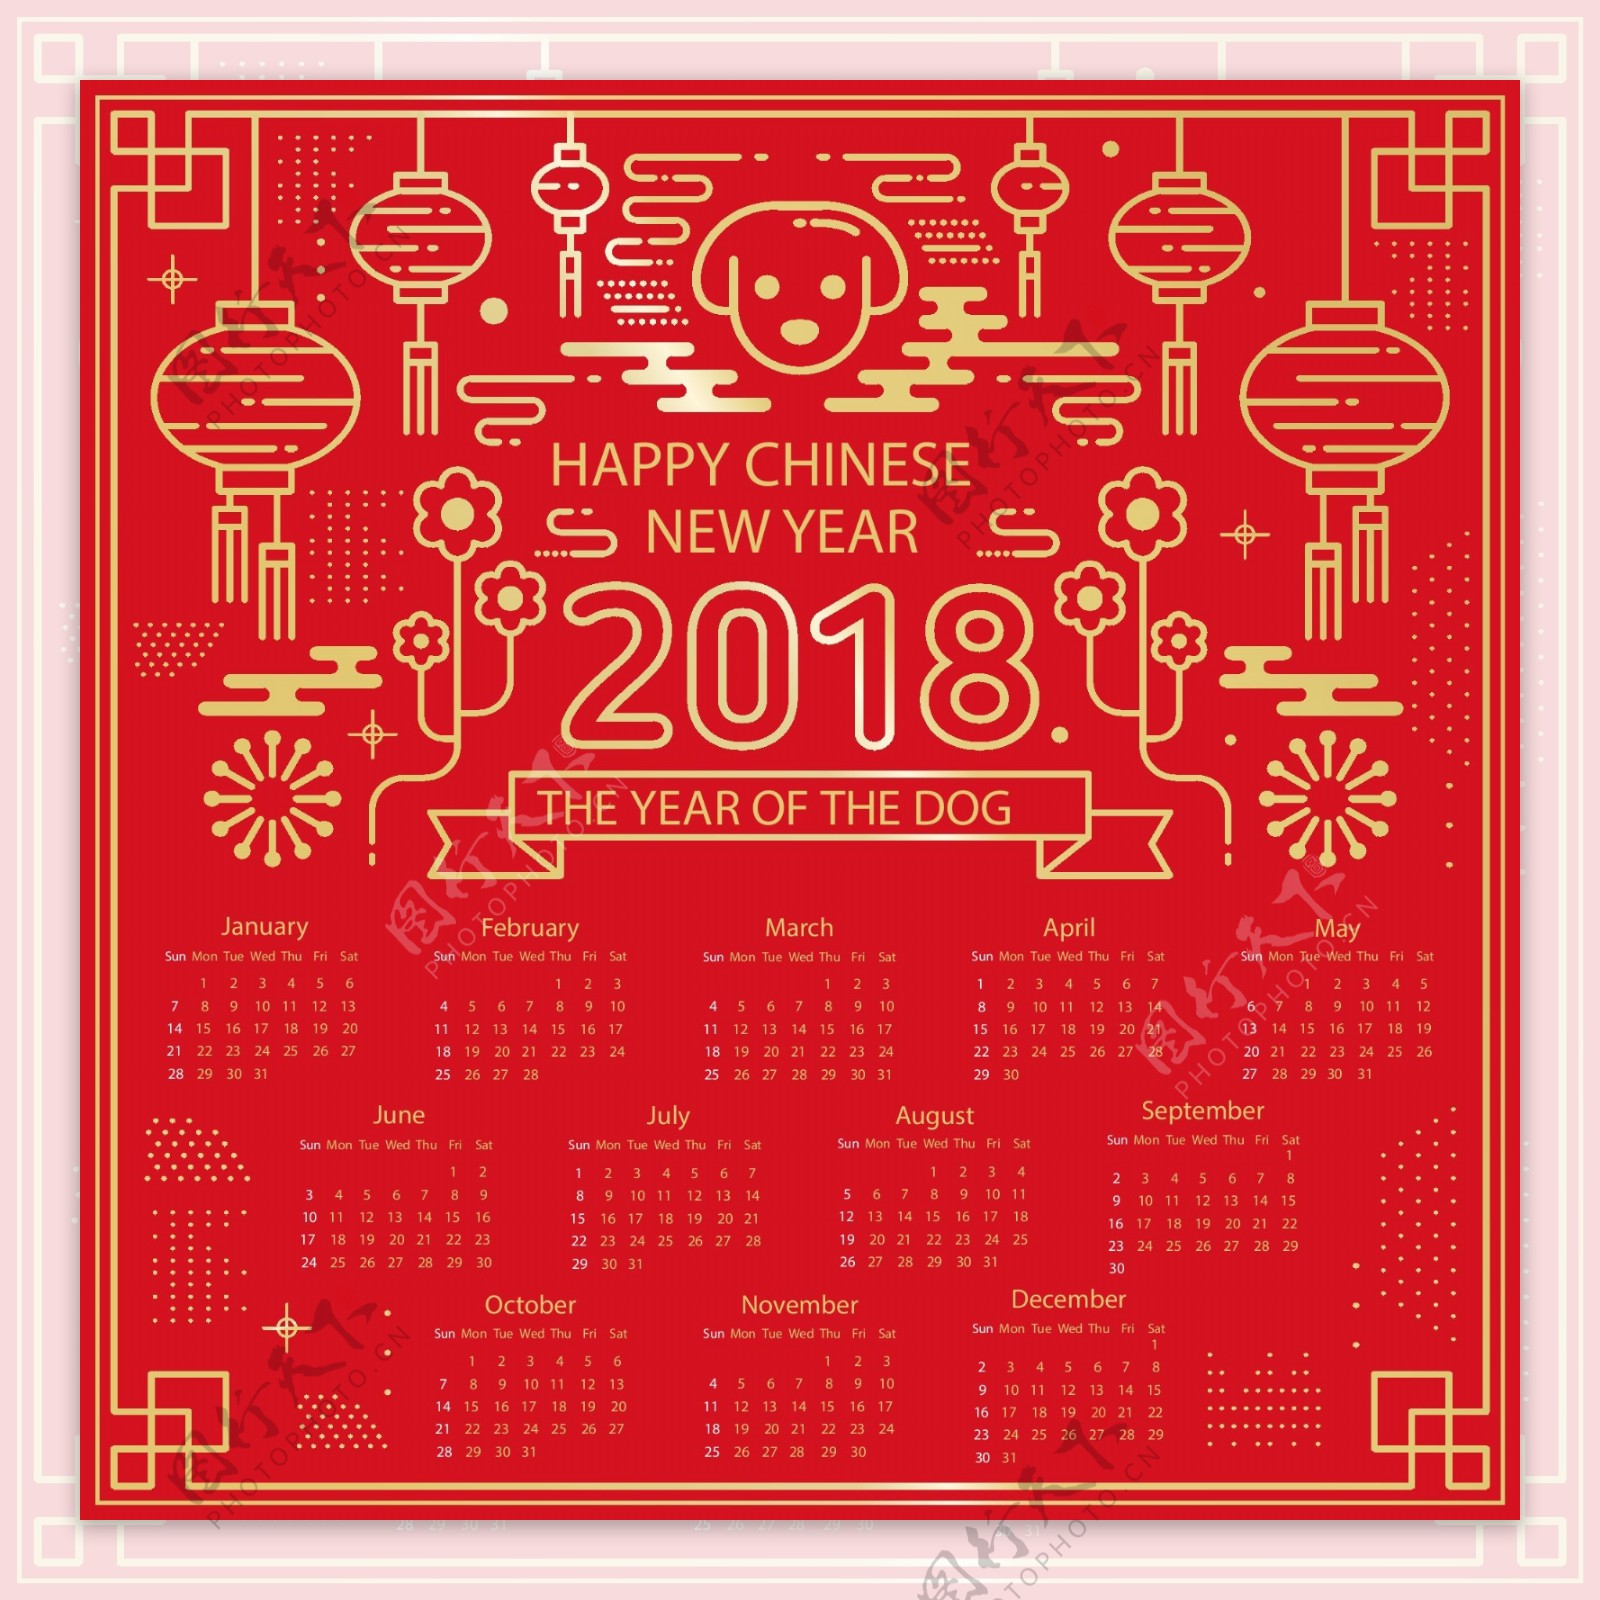 2018红金色新年元素日历